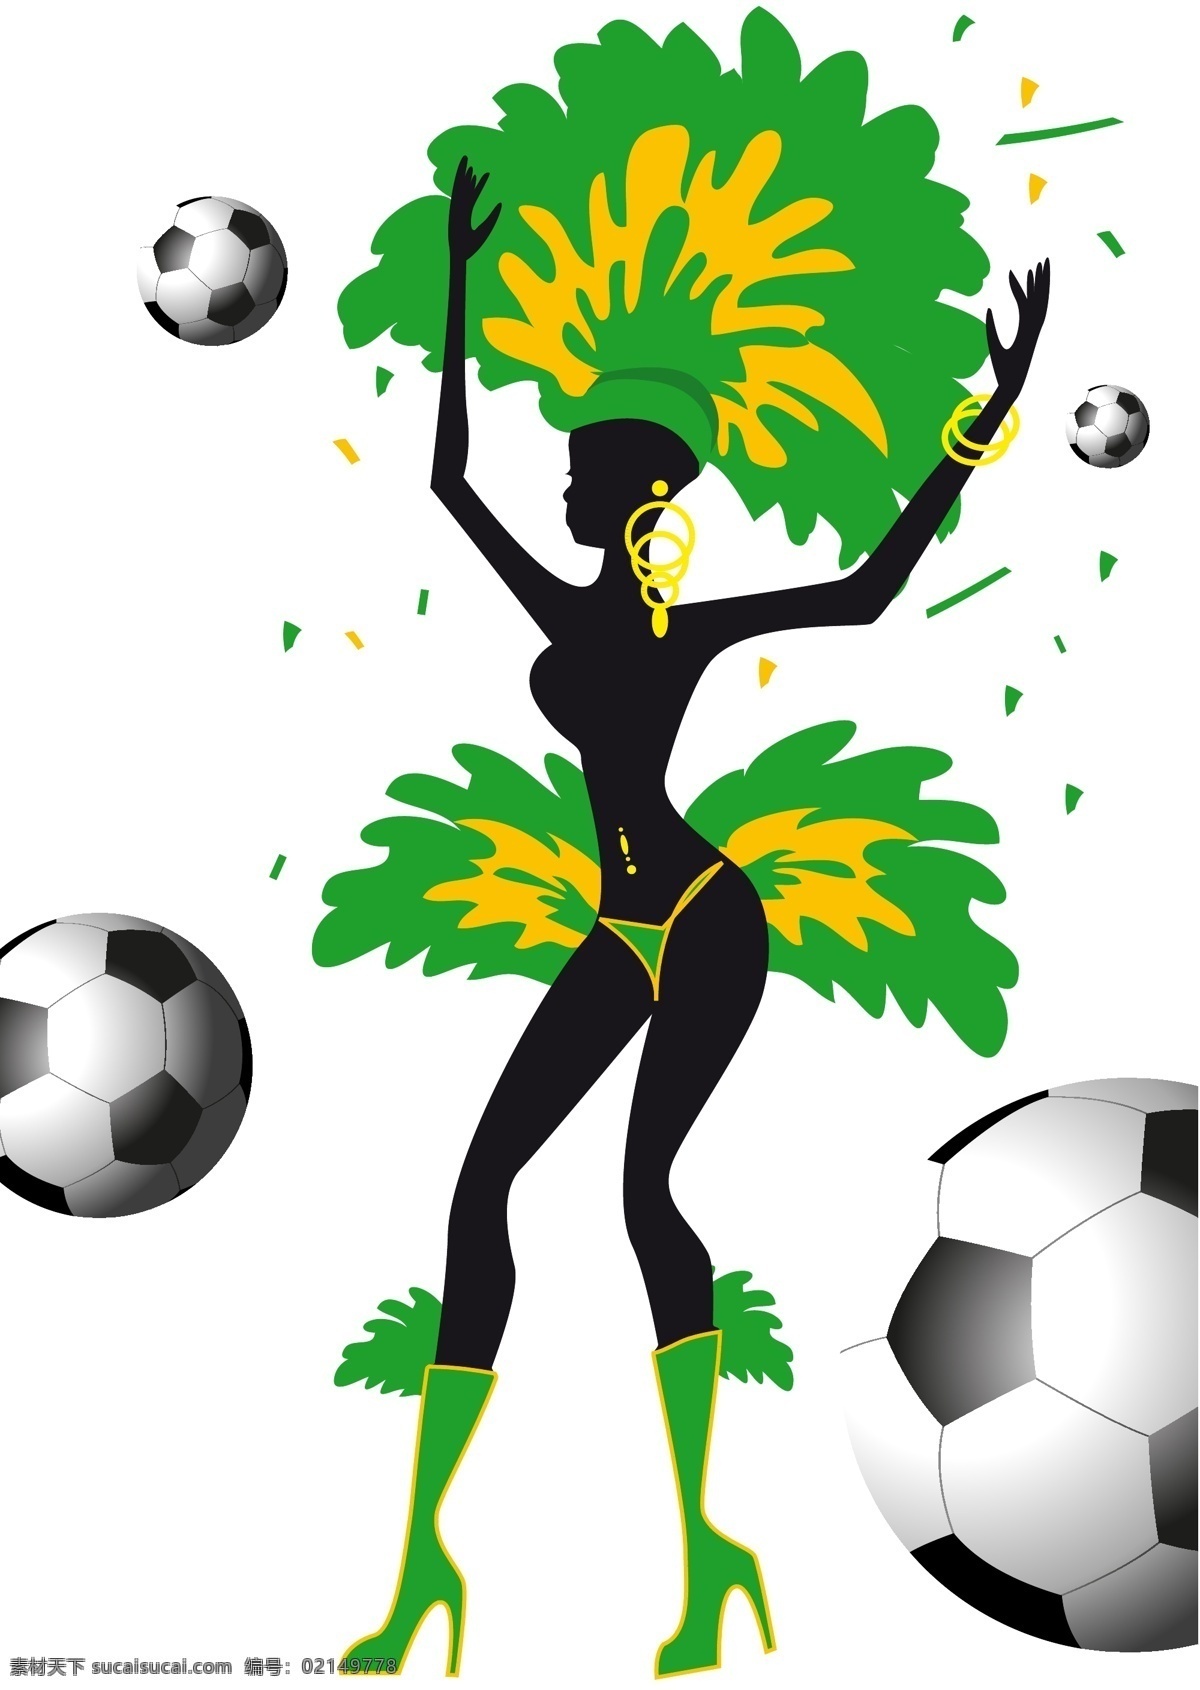 桑巴舞 美女 足球 模板下载 卡通美女 巴西美女 巴西 世界杯 足球赛事 体育运动 生活百科 矢量素材 白色